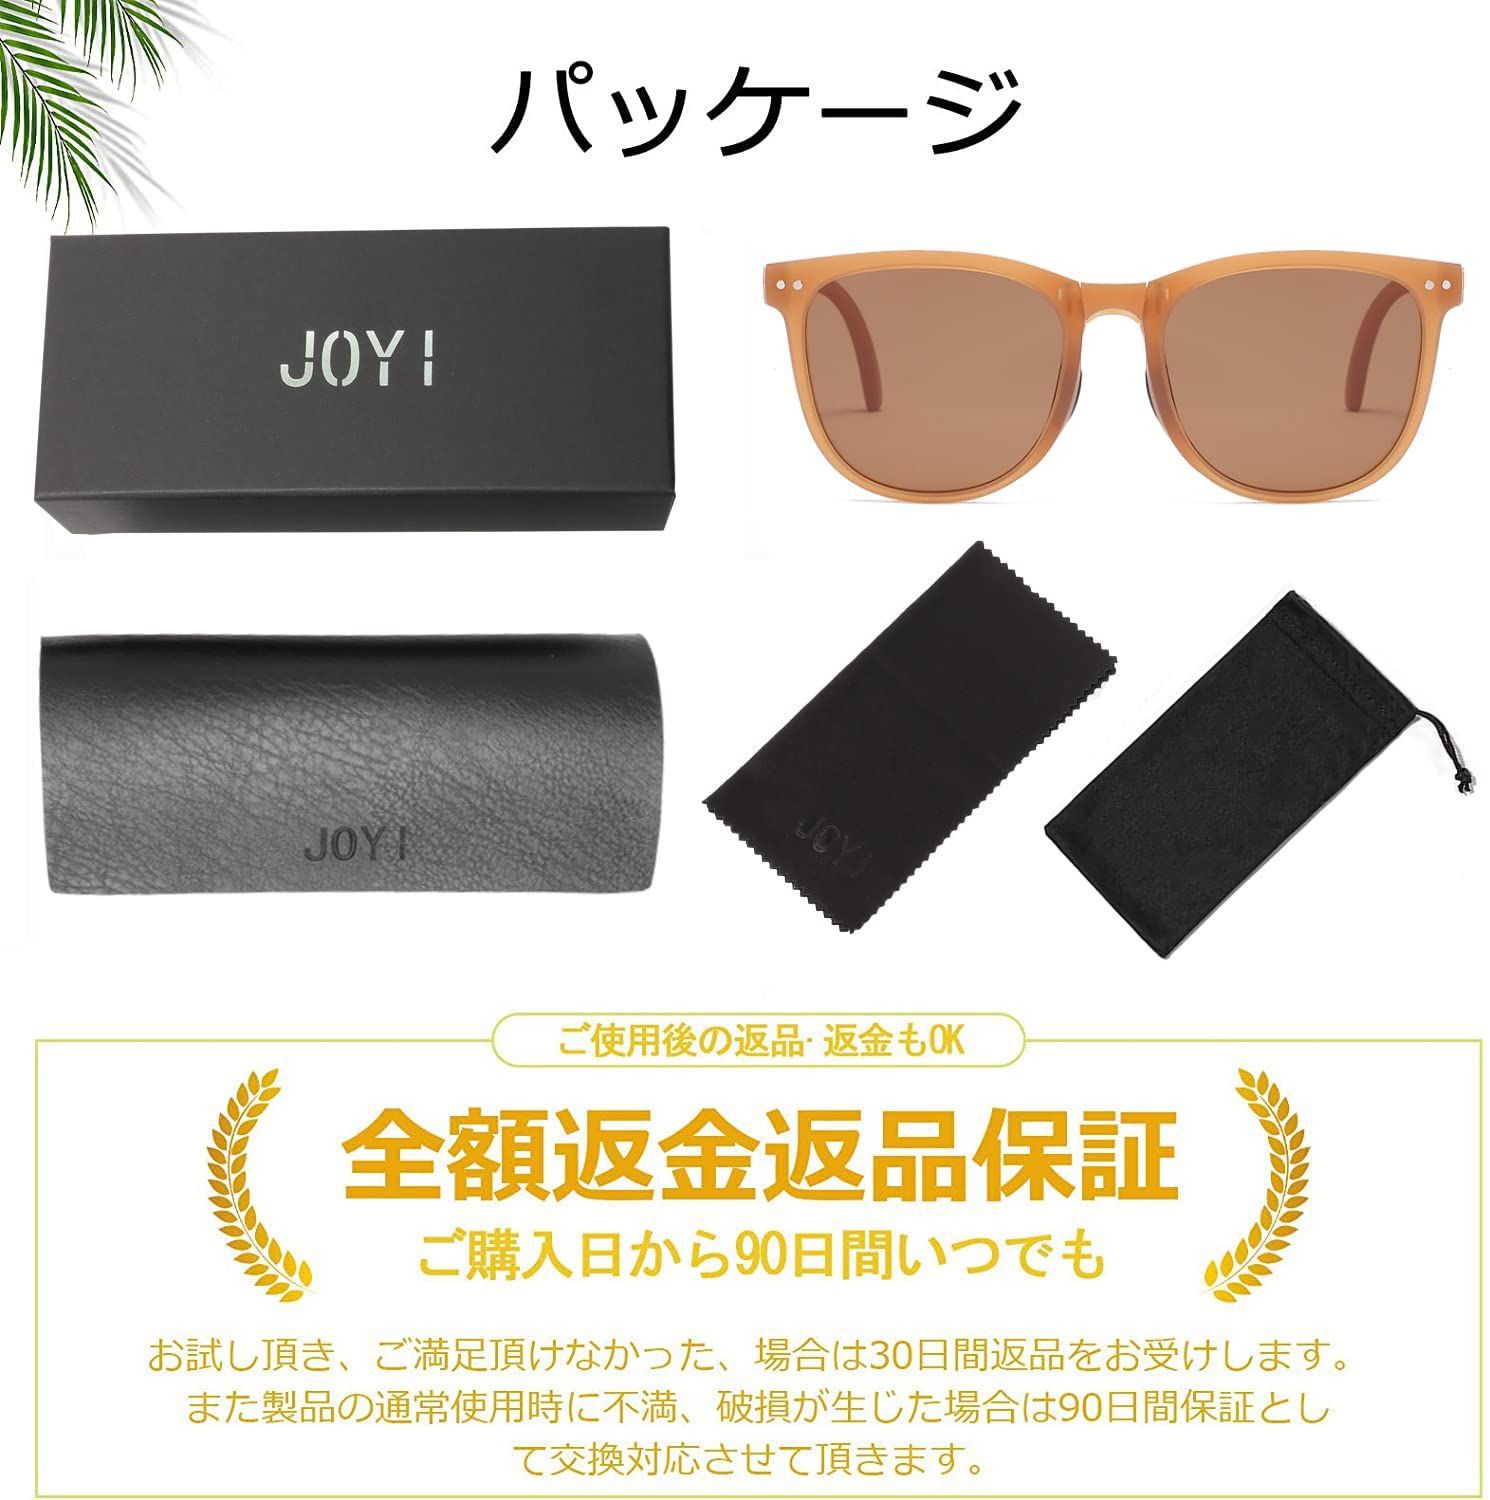 【色: ブラウン】JOYI サングラス 偏光レンズ 100%紫外線カット UV4